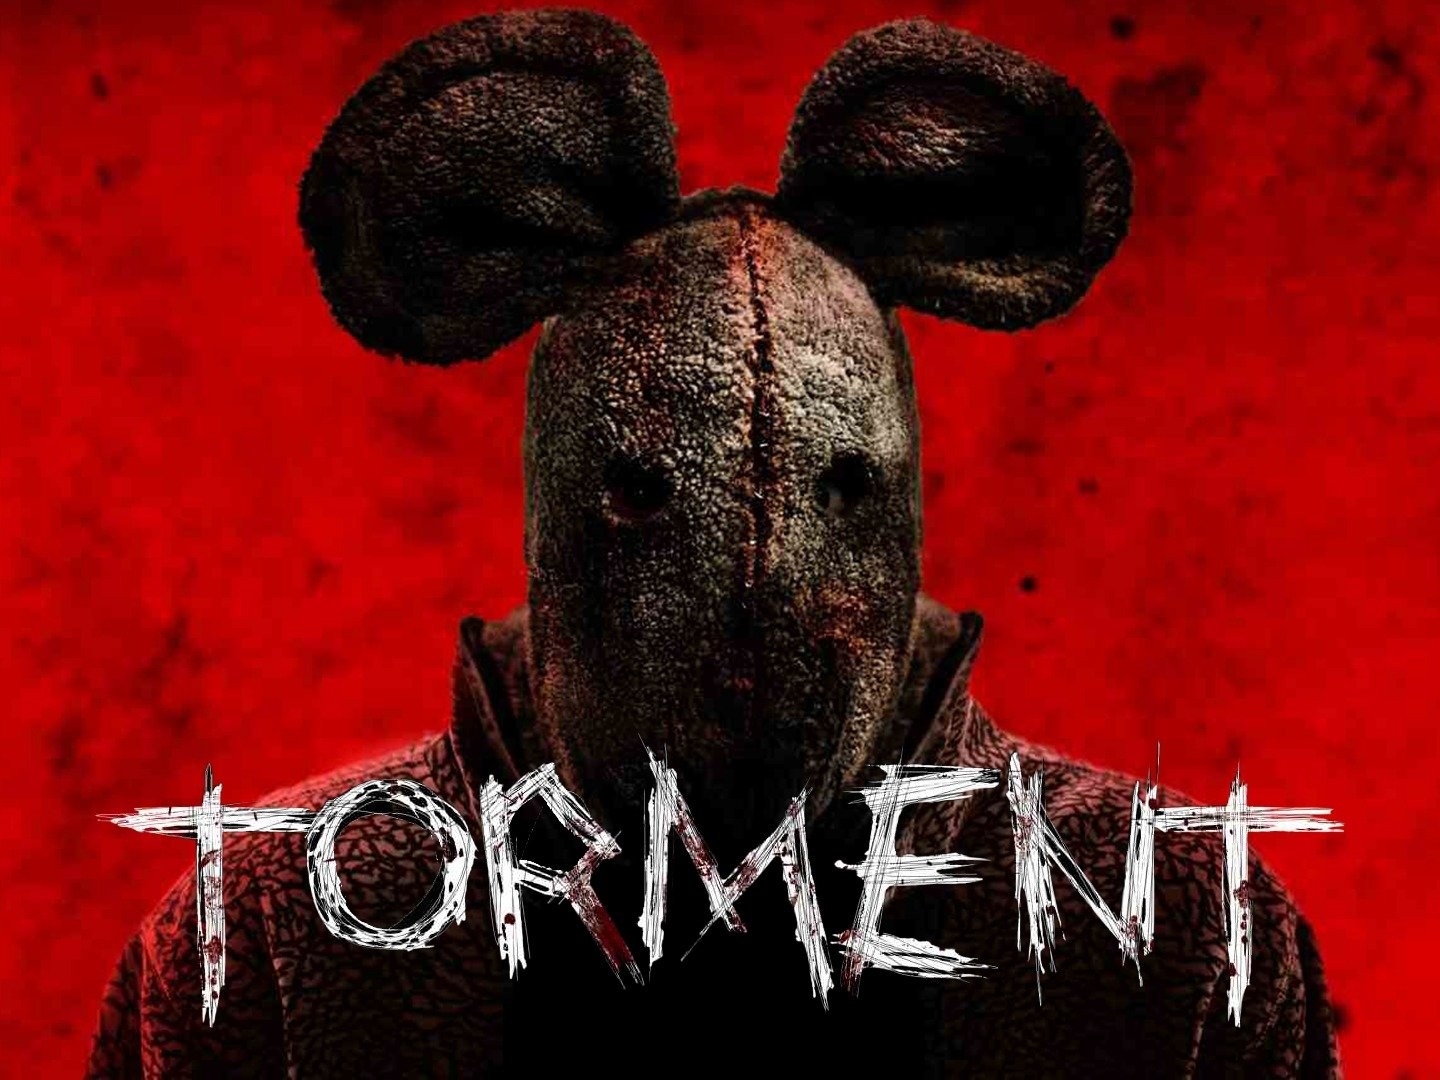 Torment (2013 film) - Wikipedia